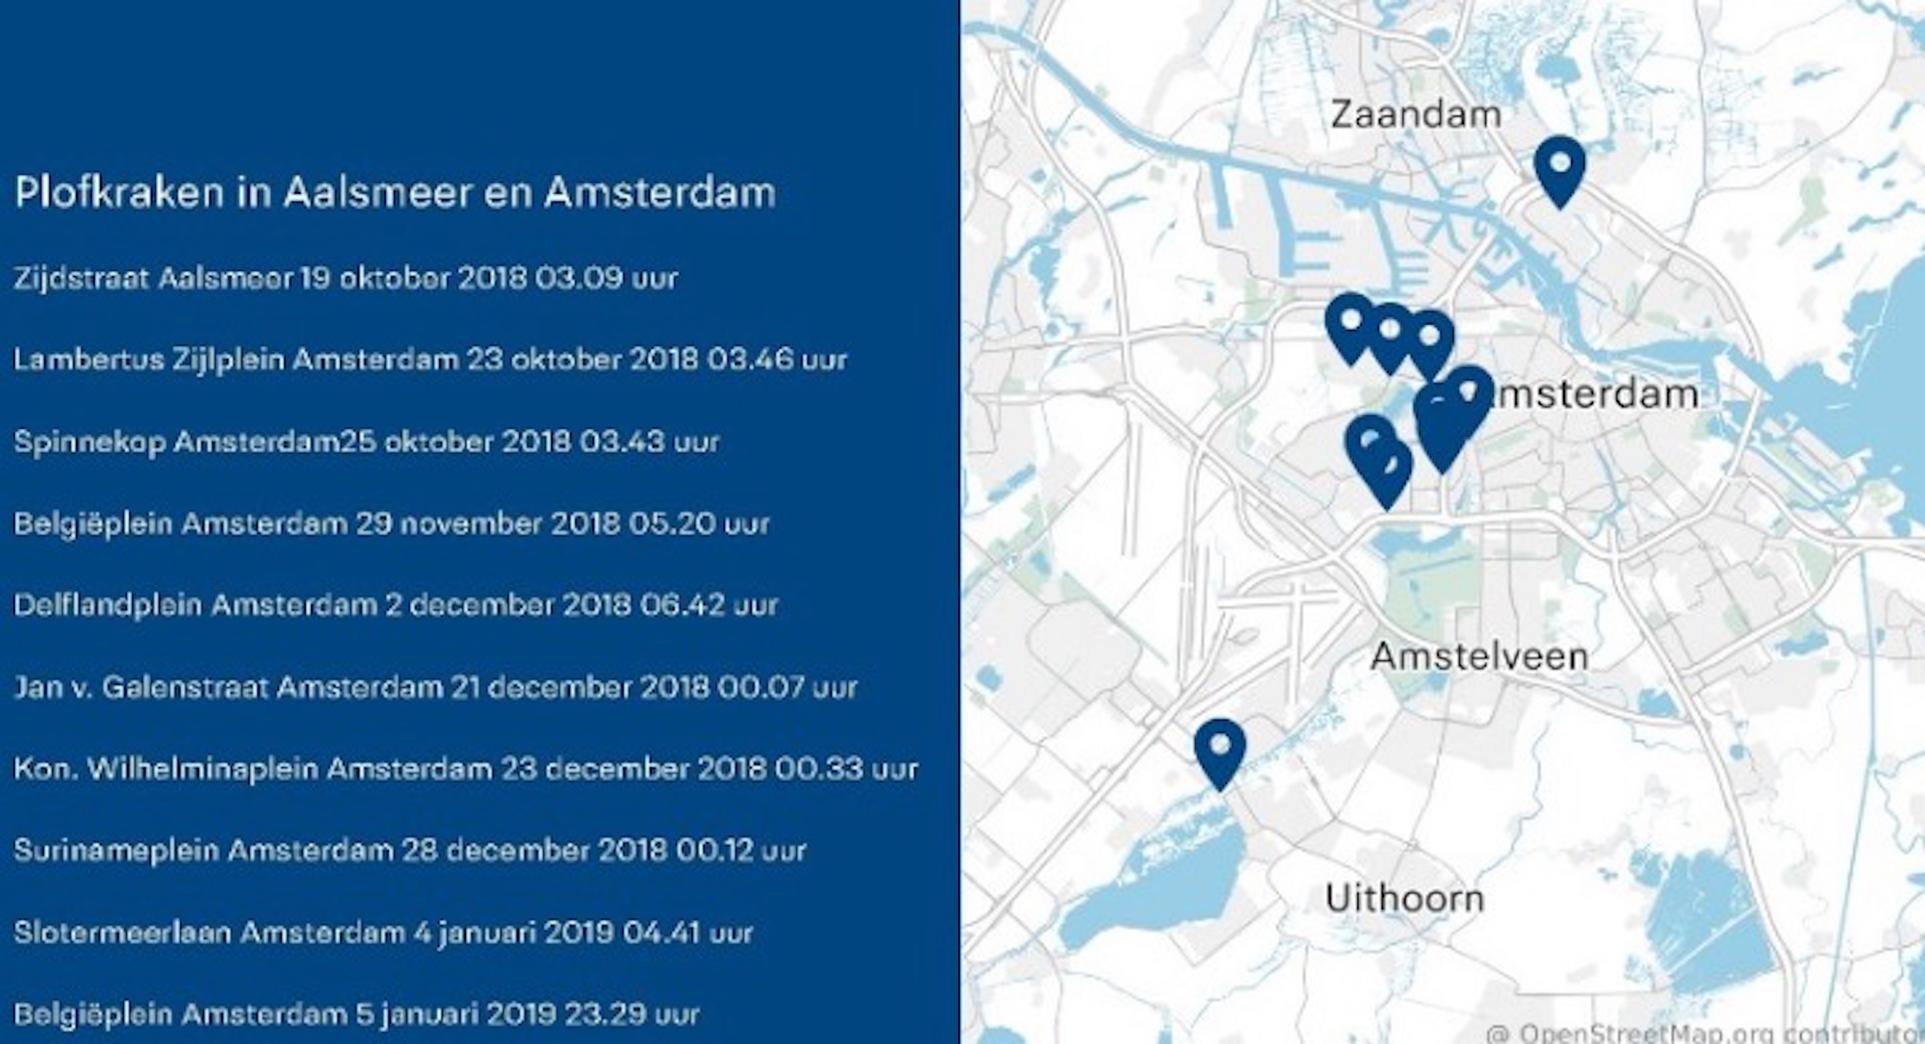 Twee Amsterdammers aangehouden na reeks plofkraken